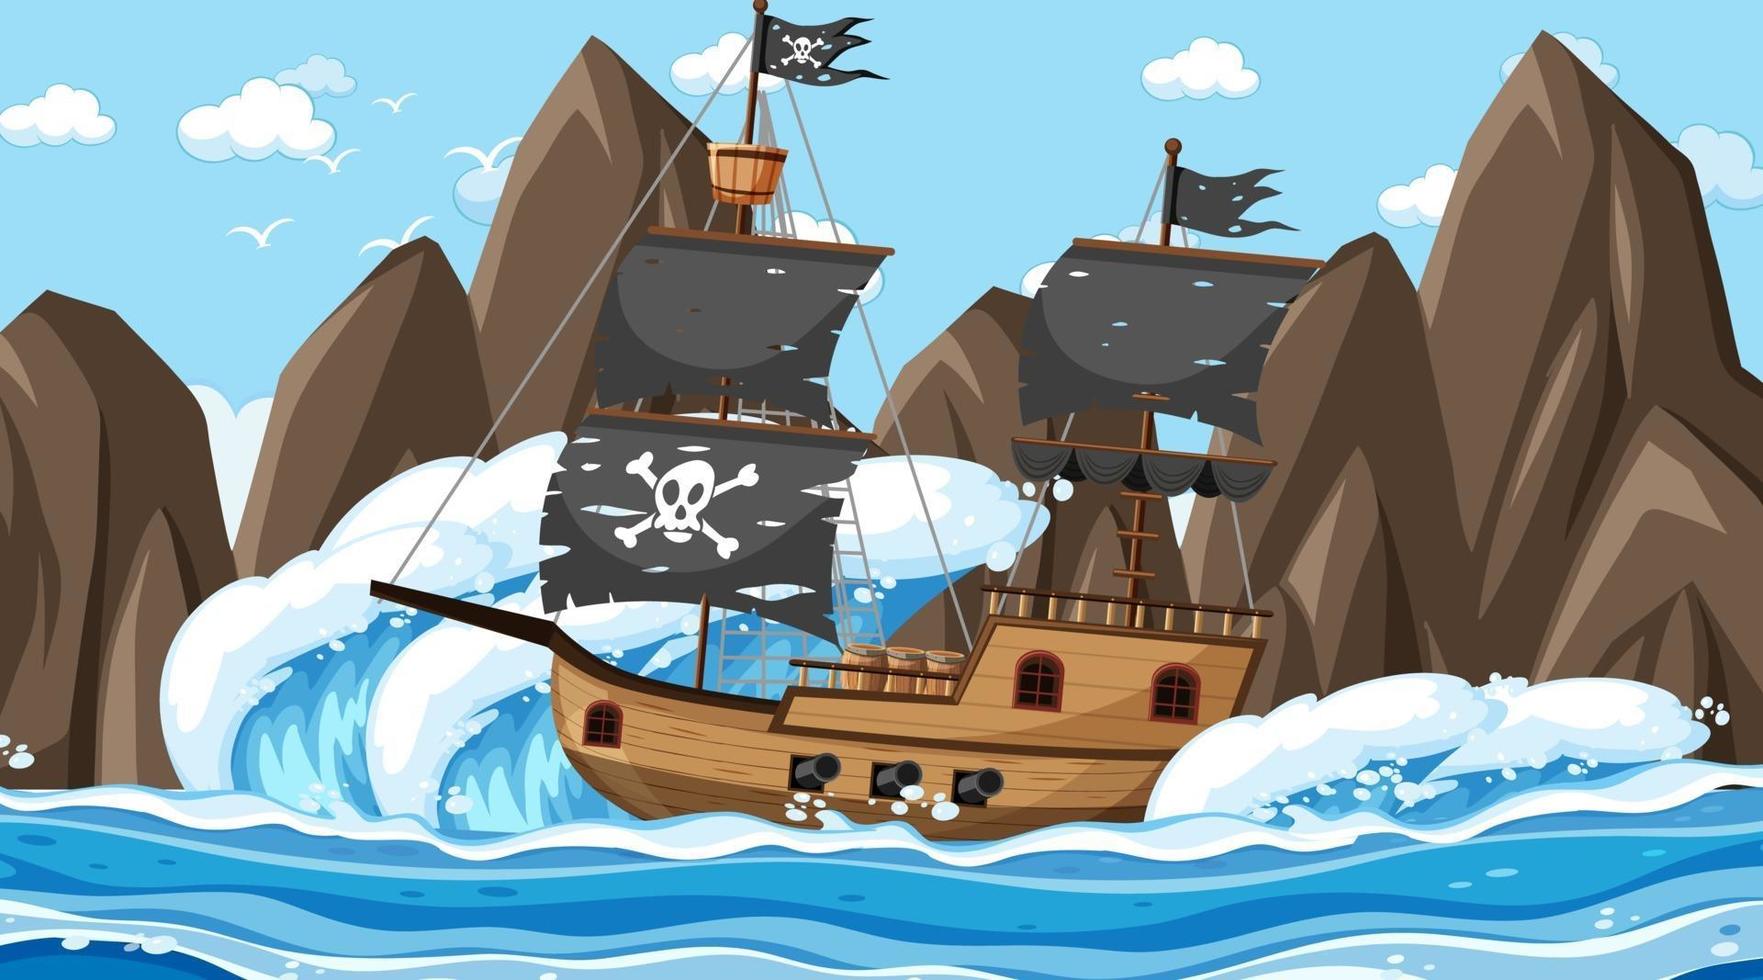 oceano com navio pirata na cena do dia em estilo cartoon vetor